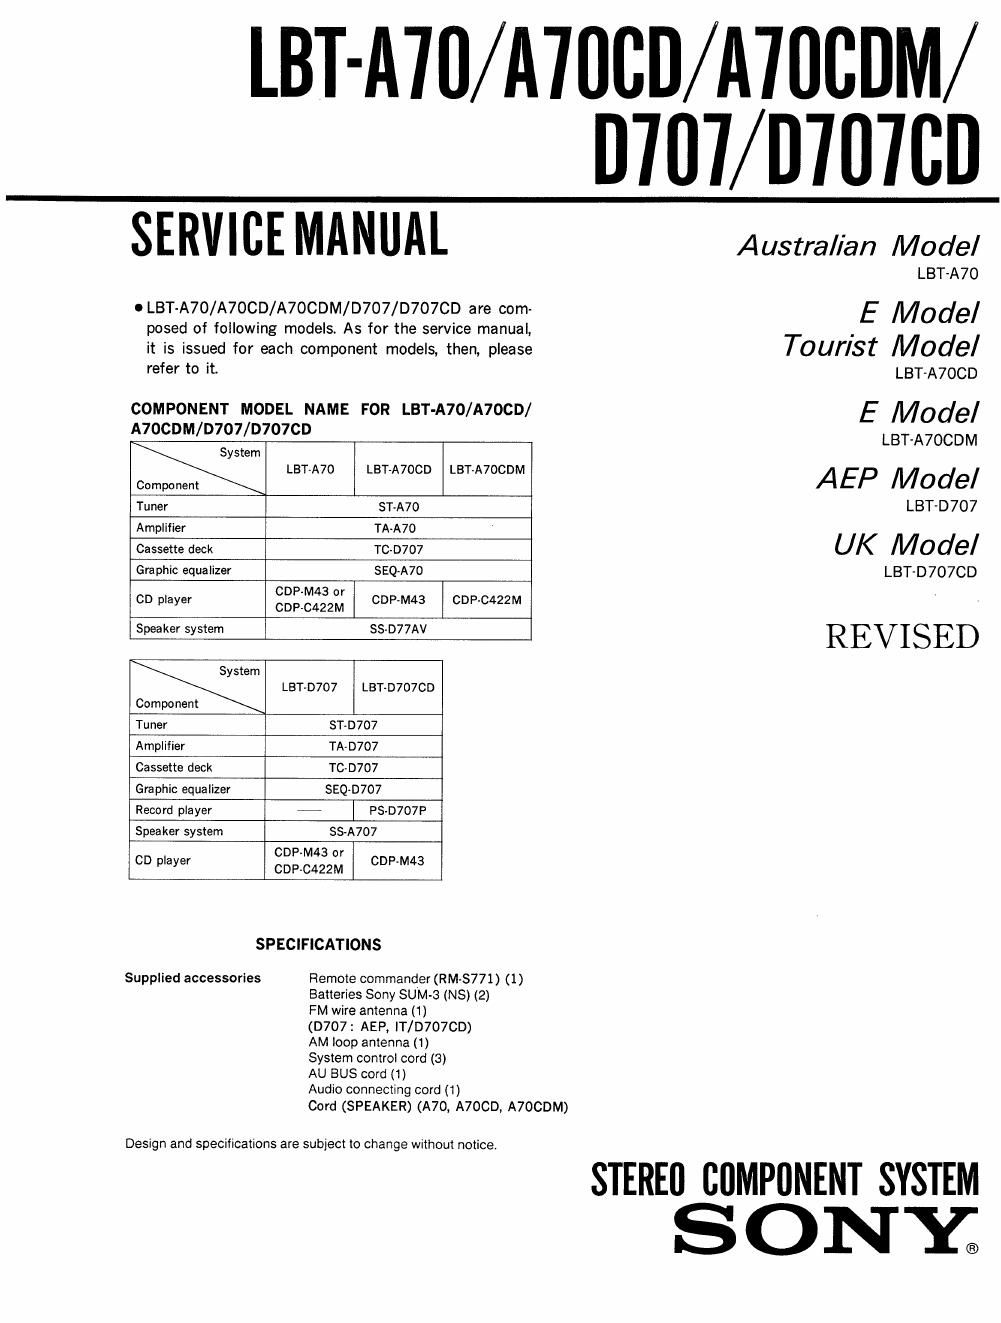 sony lbt a 70 cdm service manual